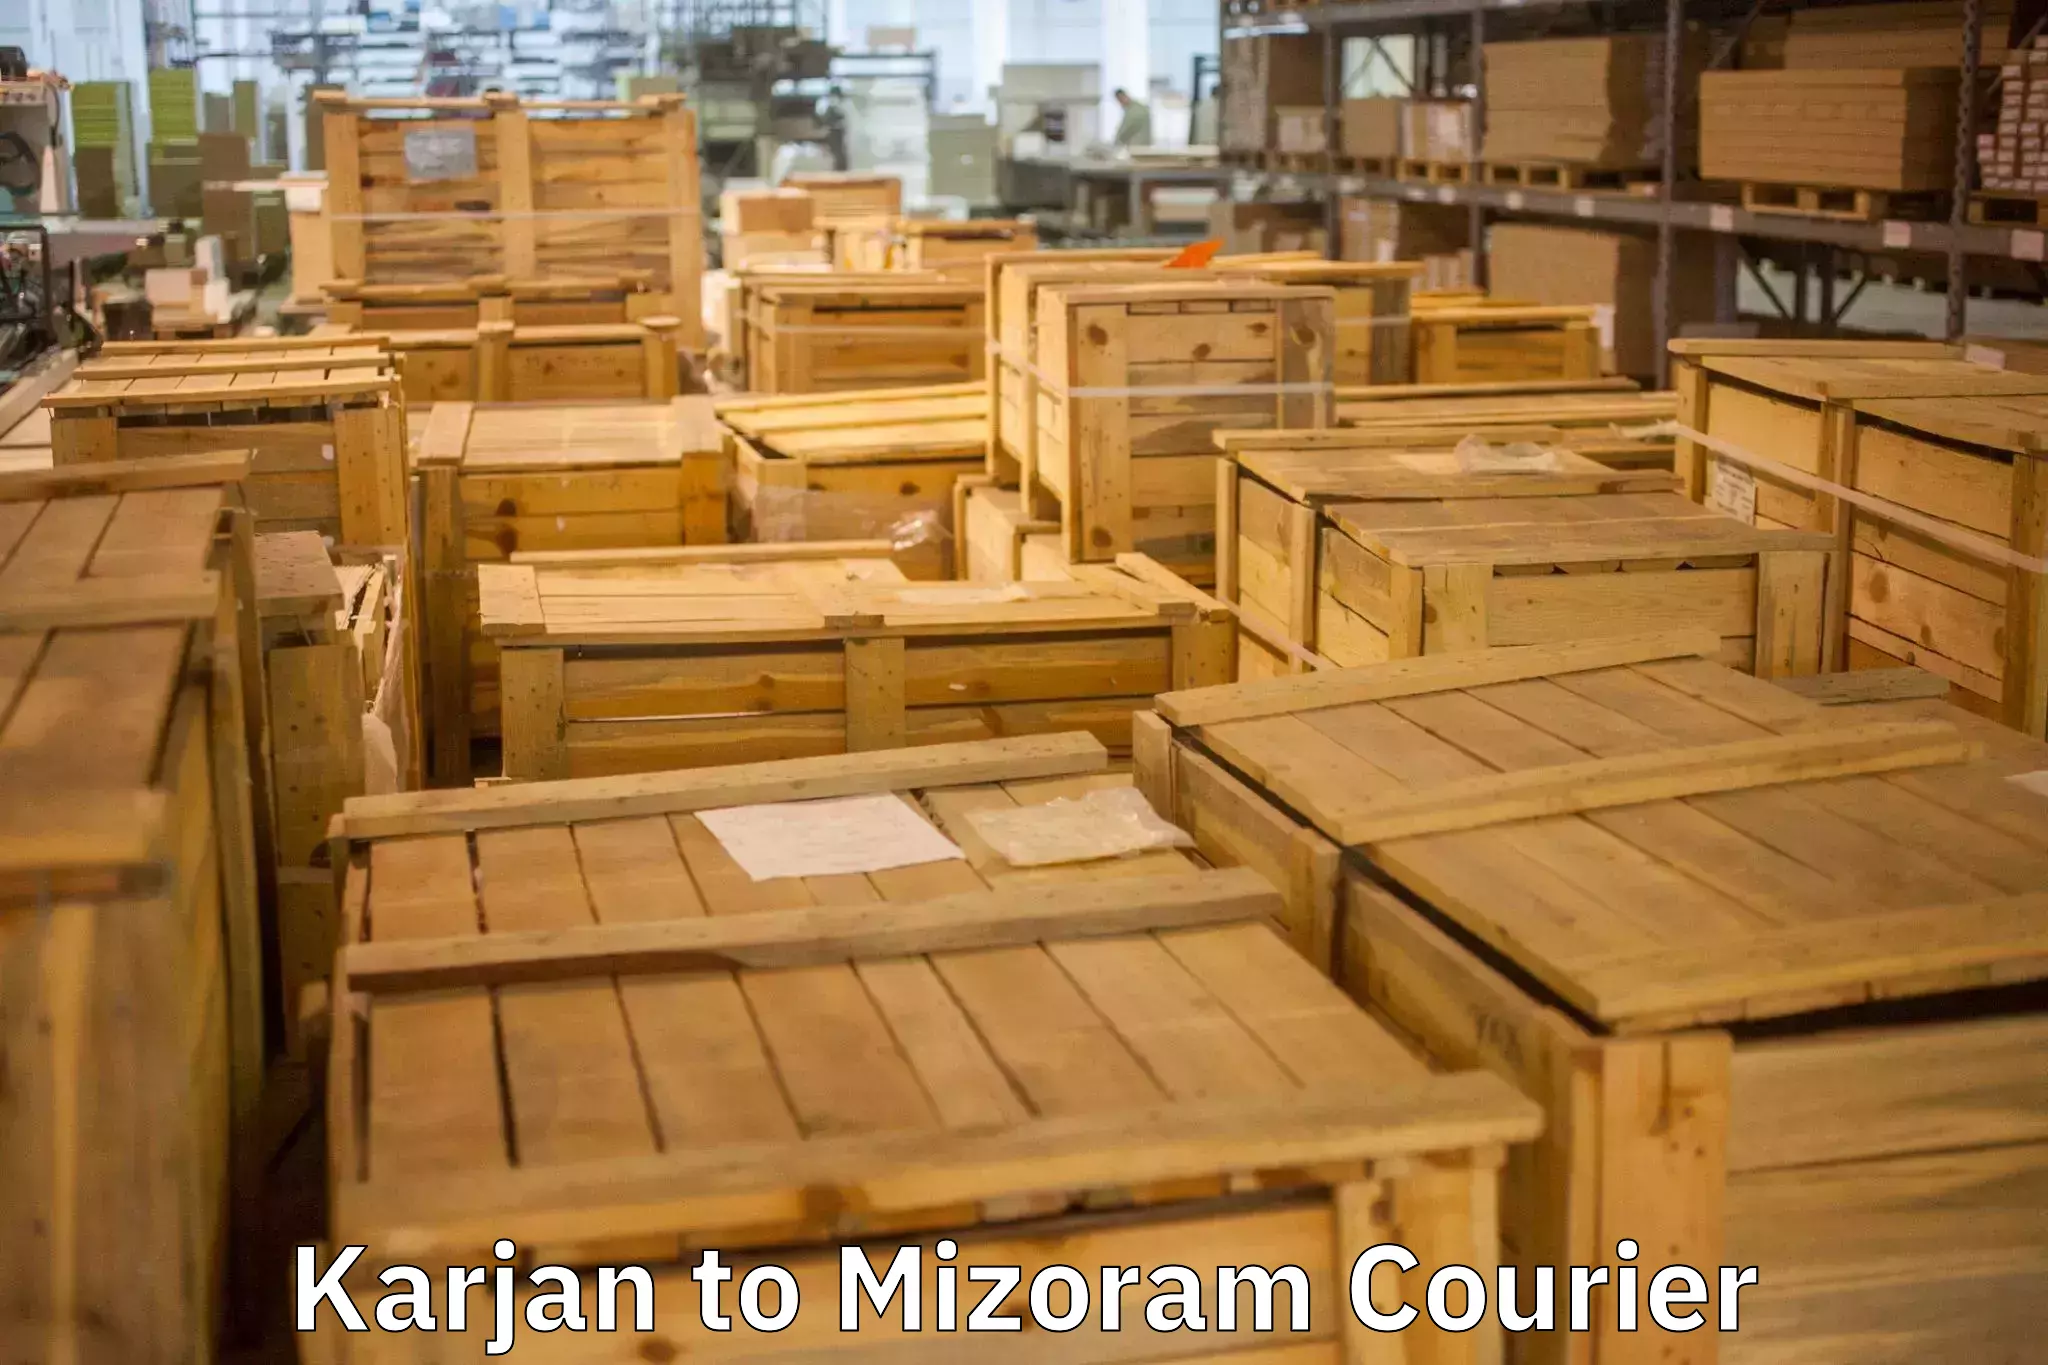 Furniture transport professionals Karjan to Mizoram